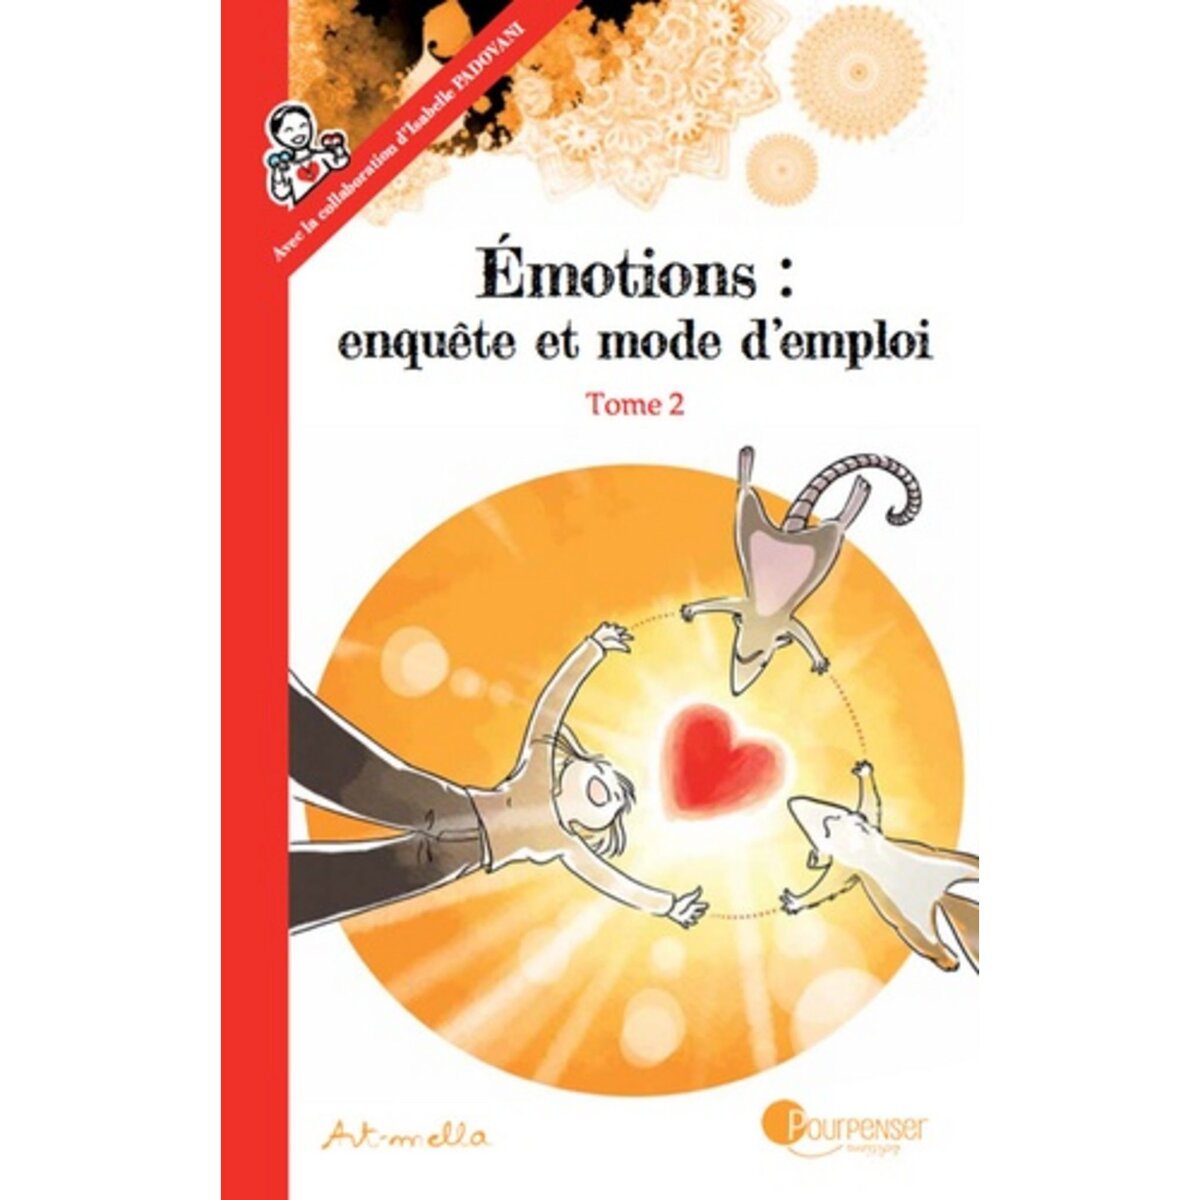  EMOTIONS : ENQUETE ET MODE D'EMPLOI TOME 2 , Art-mella